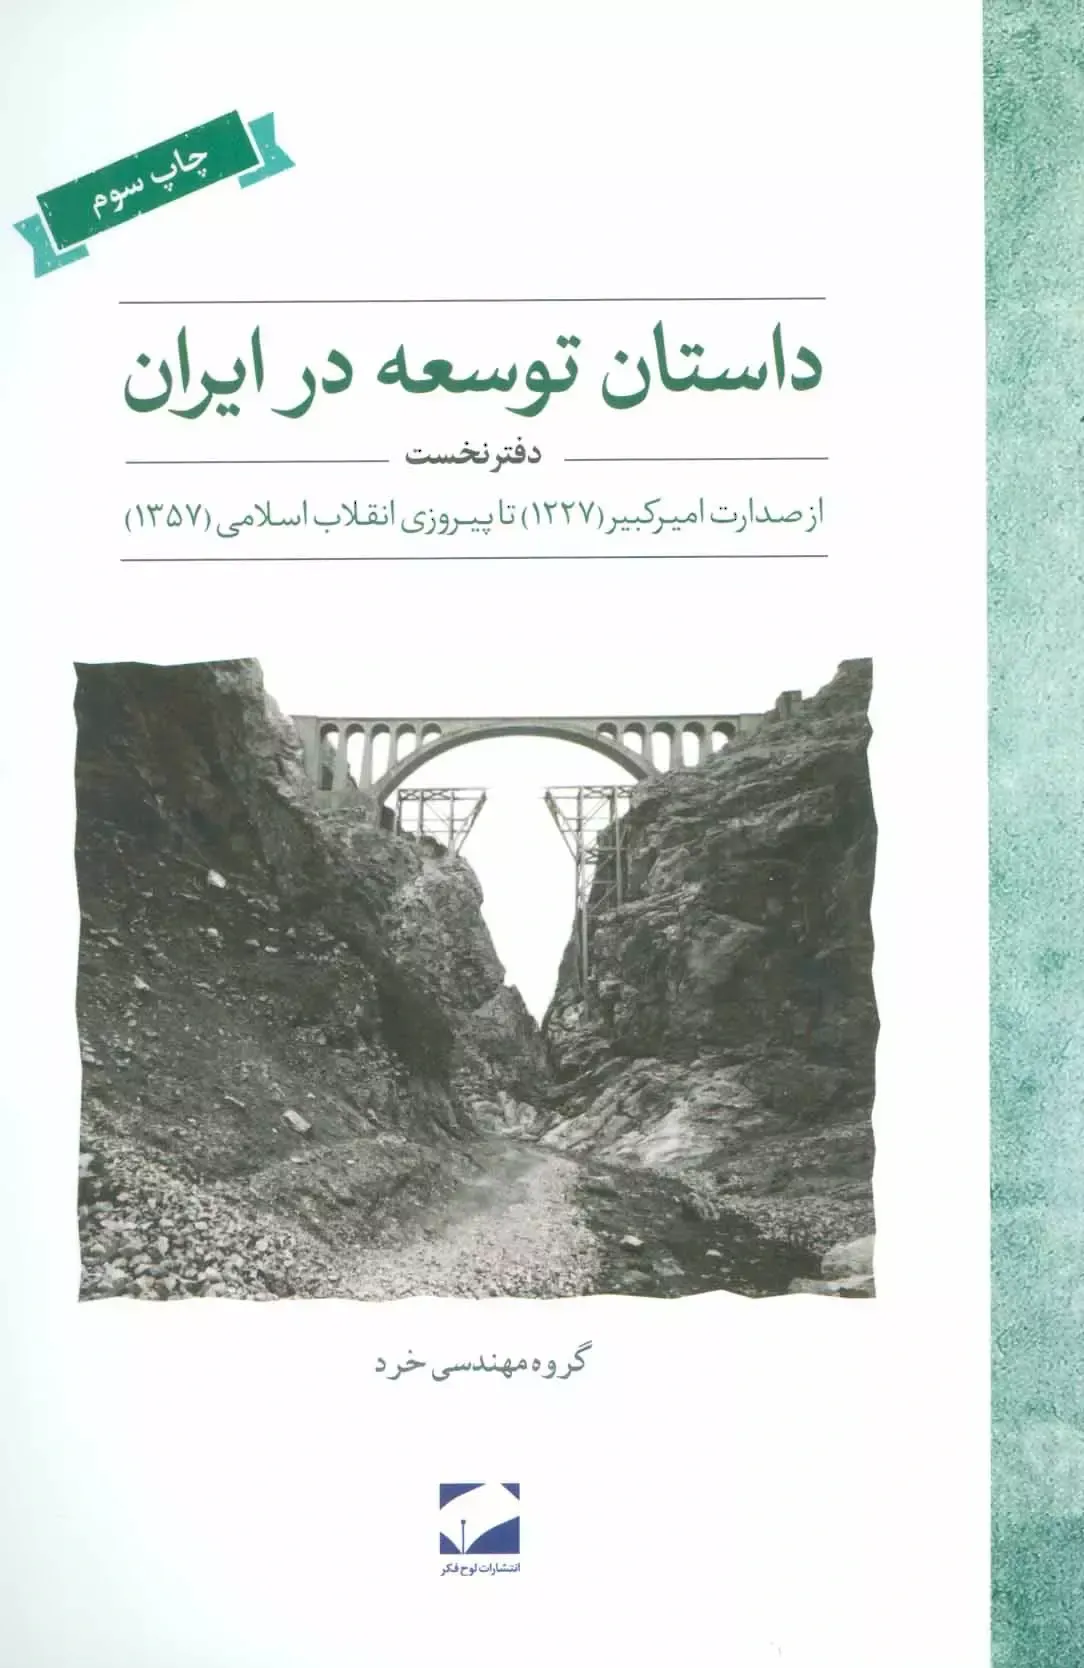 داستان توسعه در ایران: از صدارت امیرکبیر (1227) تا پیروزی انقلاب اسلامی (1357)